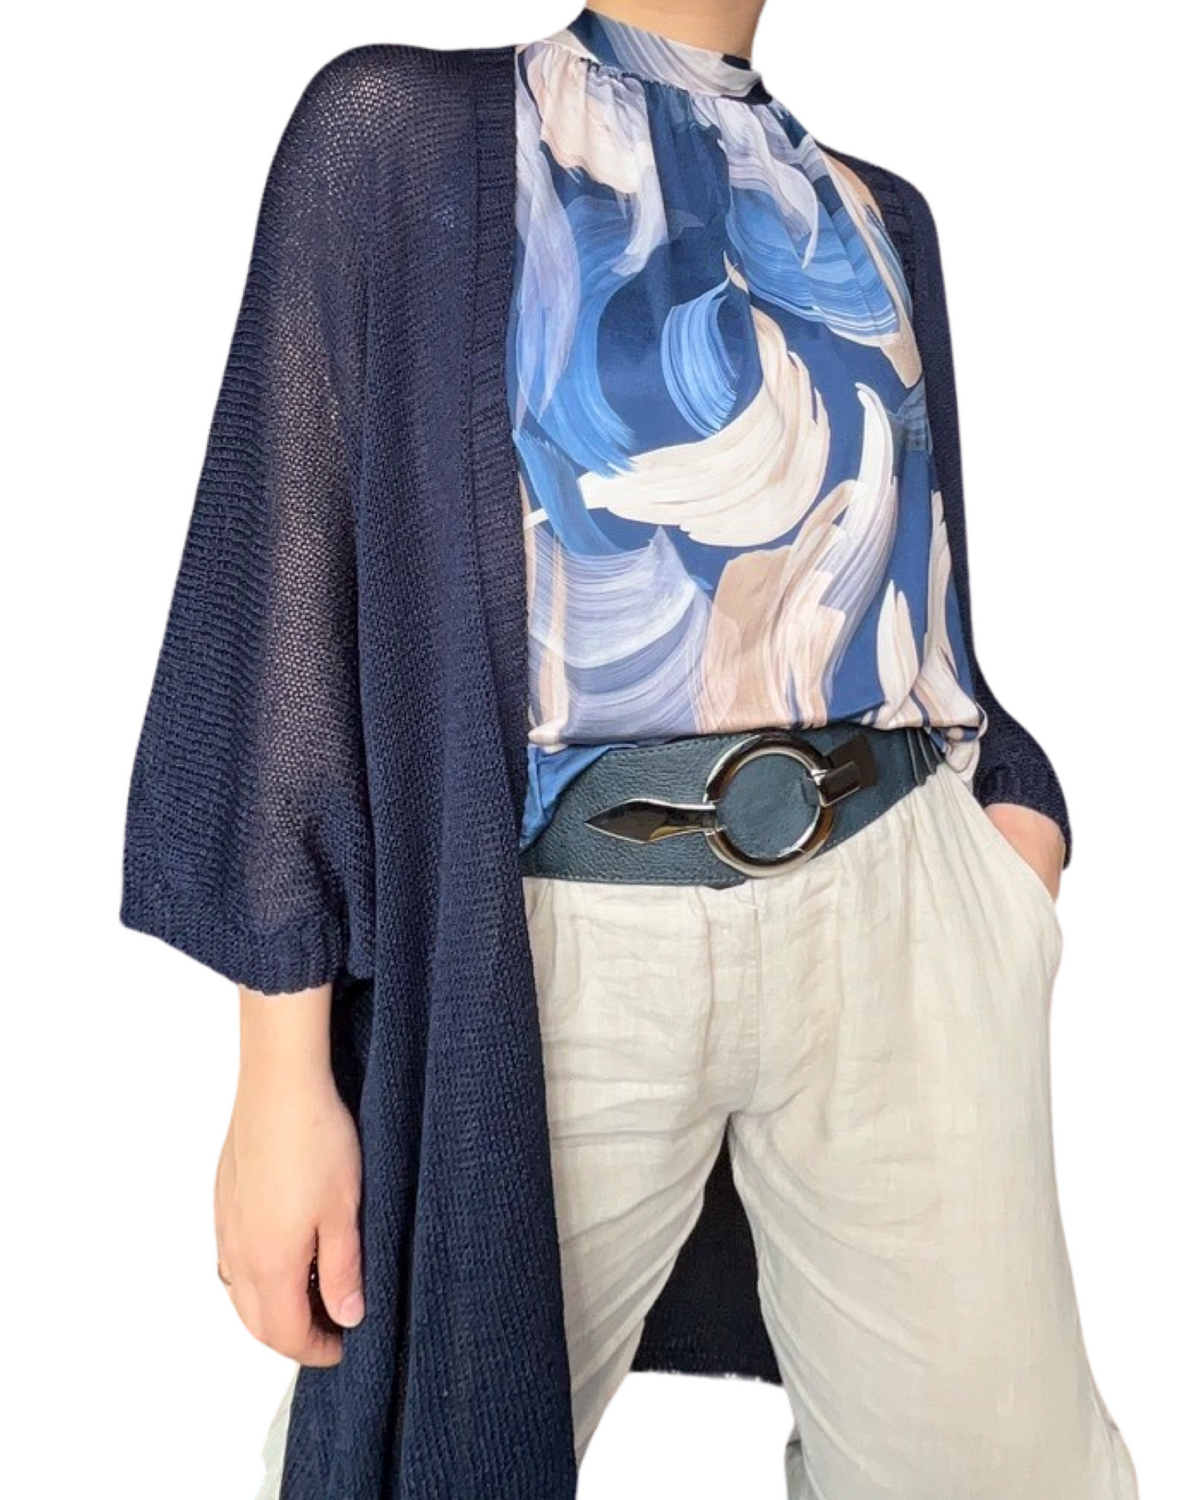 Cardigan bleu marin uni en maille pour femme avec camisole à col montant, ceinture en cuir et pantalon en lin.